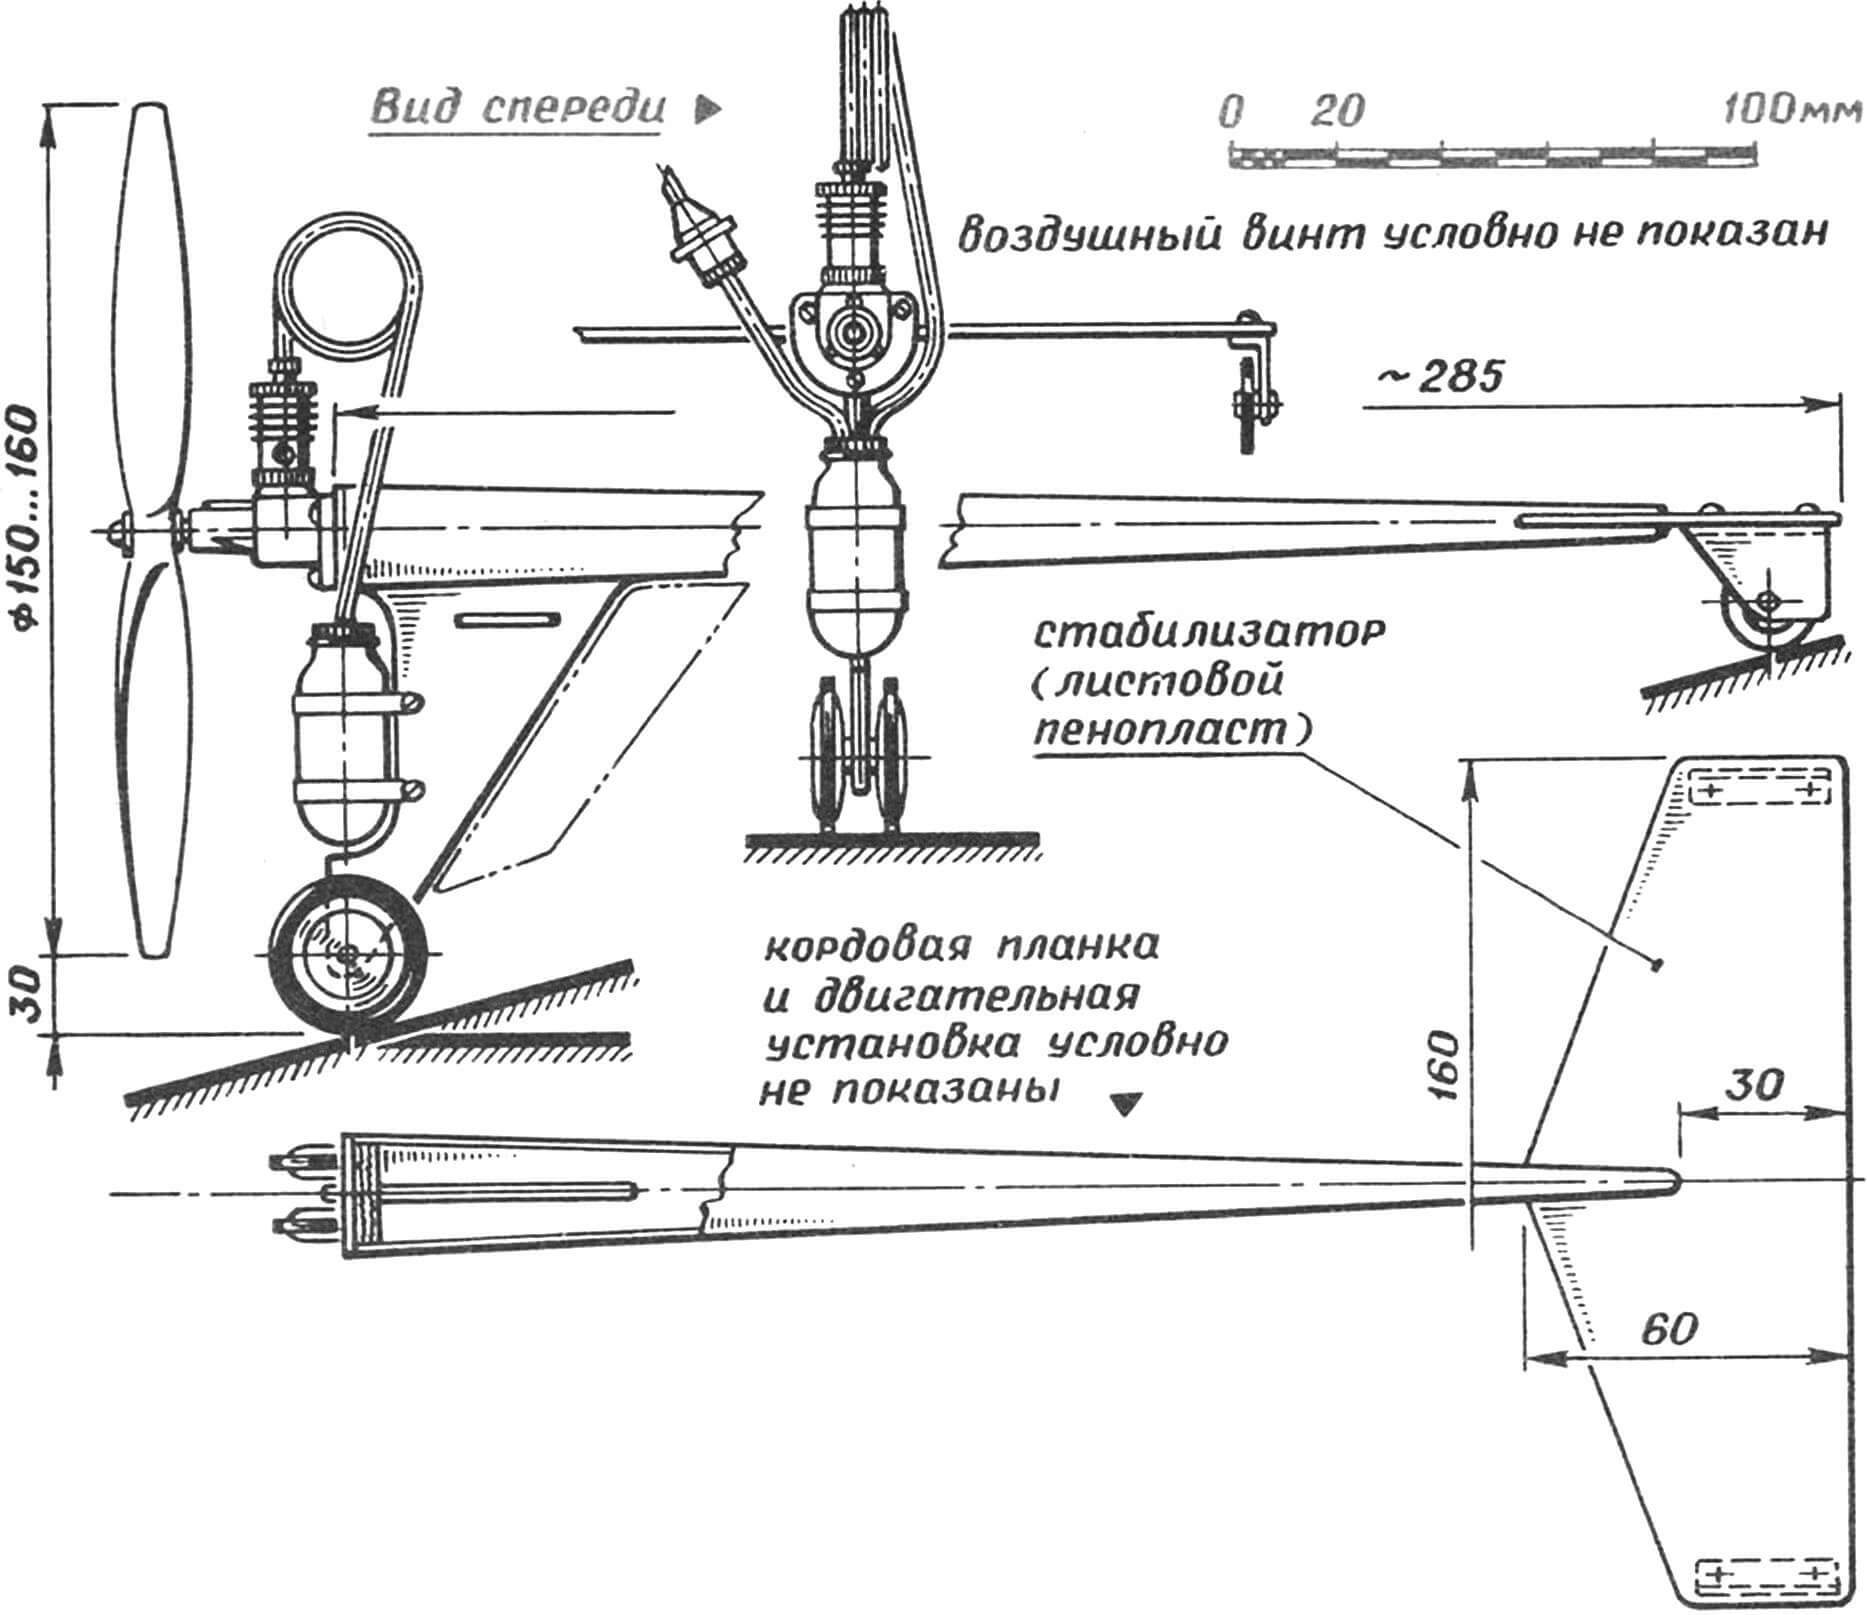 Кордовая гоночная модель аэромобиля самолетной схемы.